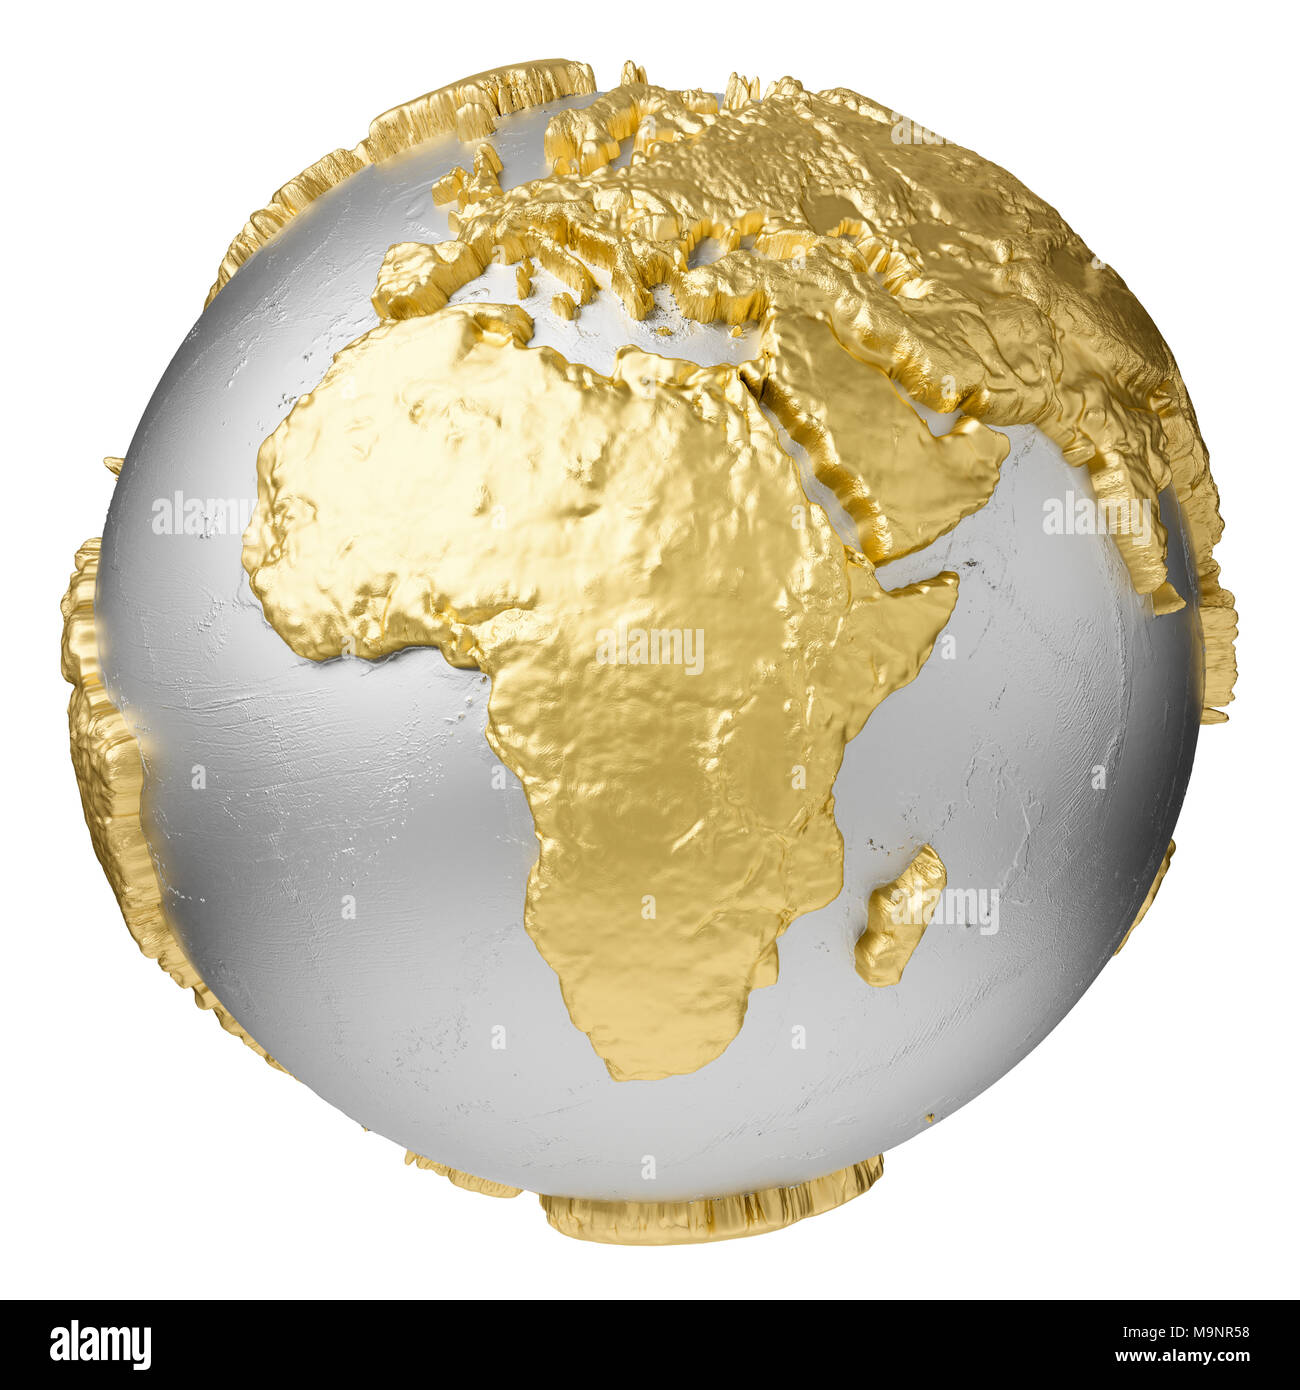 Gold, Silber Kugel ohne Wasser. Afrika. 3D-Rendering auf weißem Hintergrund. Elemente dieses Bild von der NASA eingerichtet Stockfoto